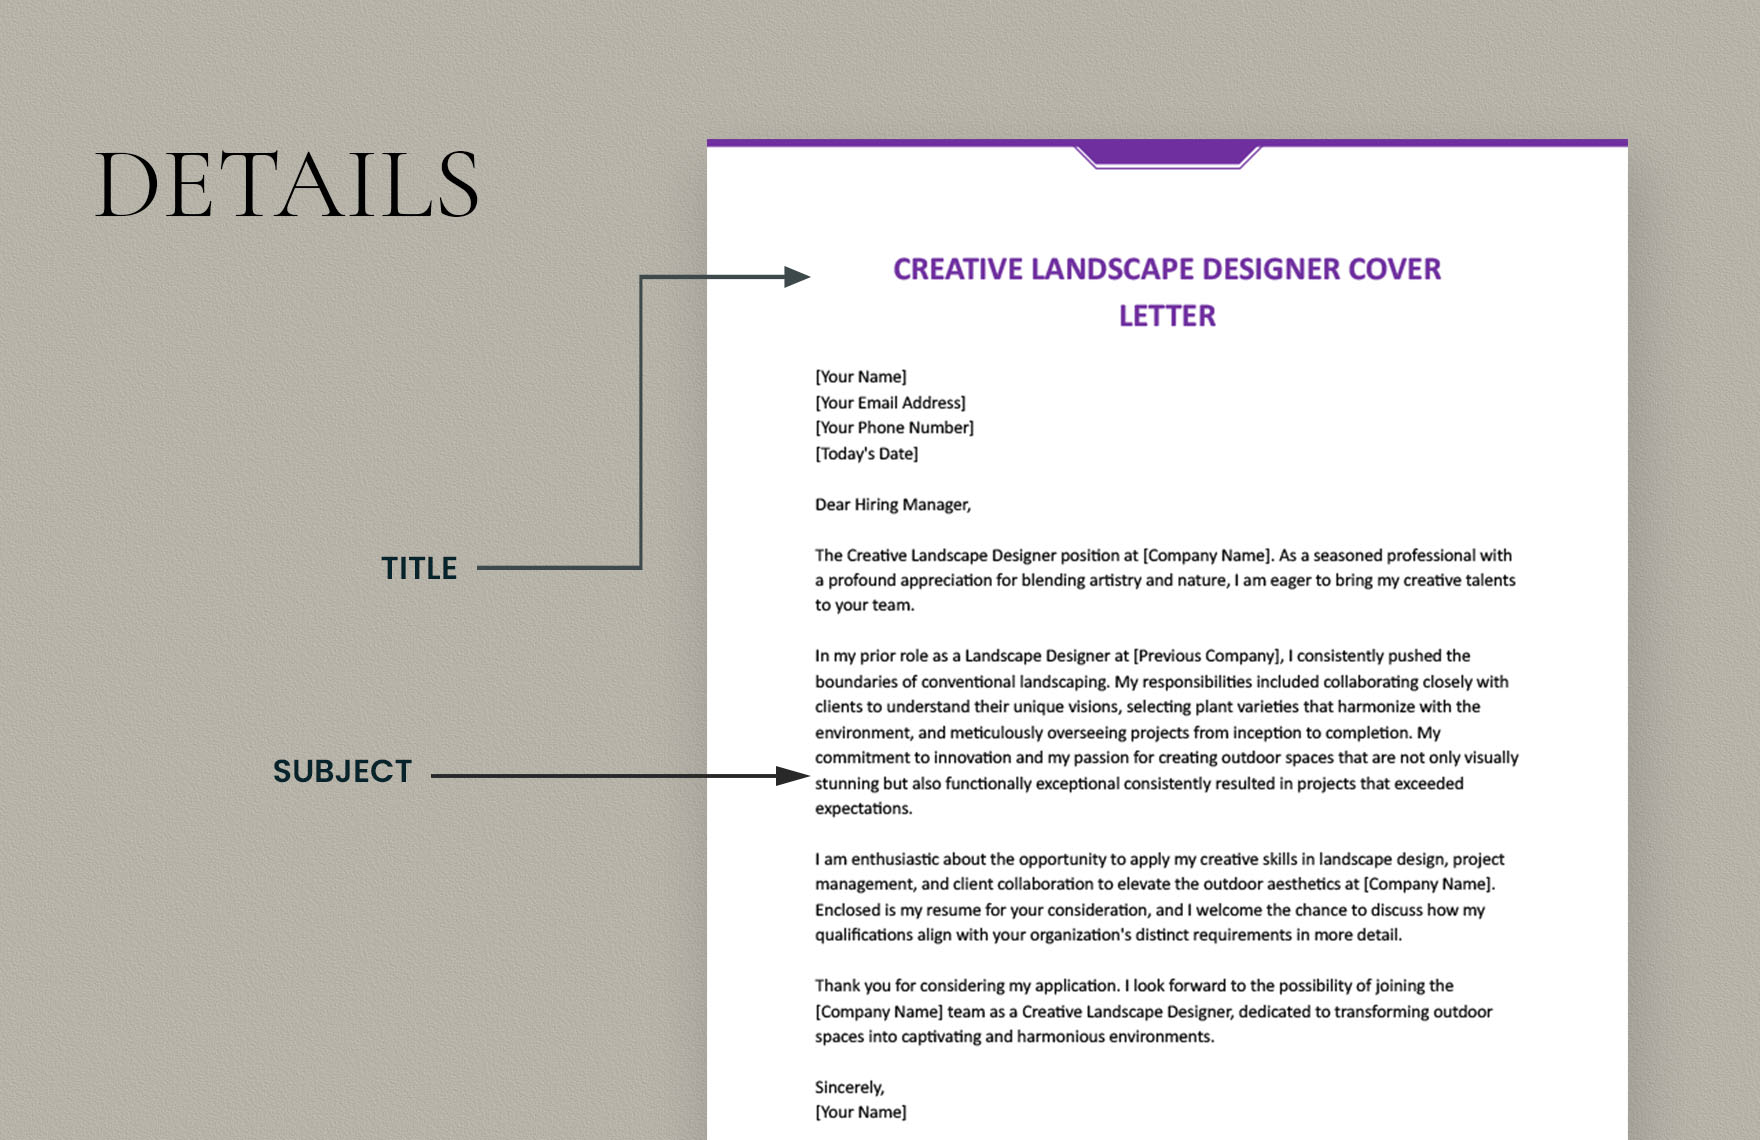 Creative Landscape Designer Cover Letter